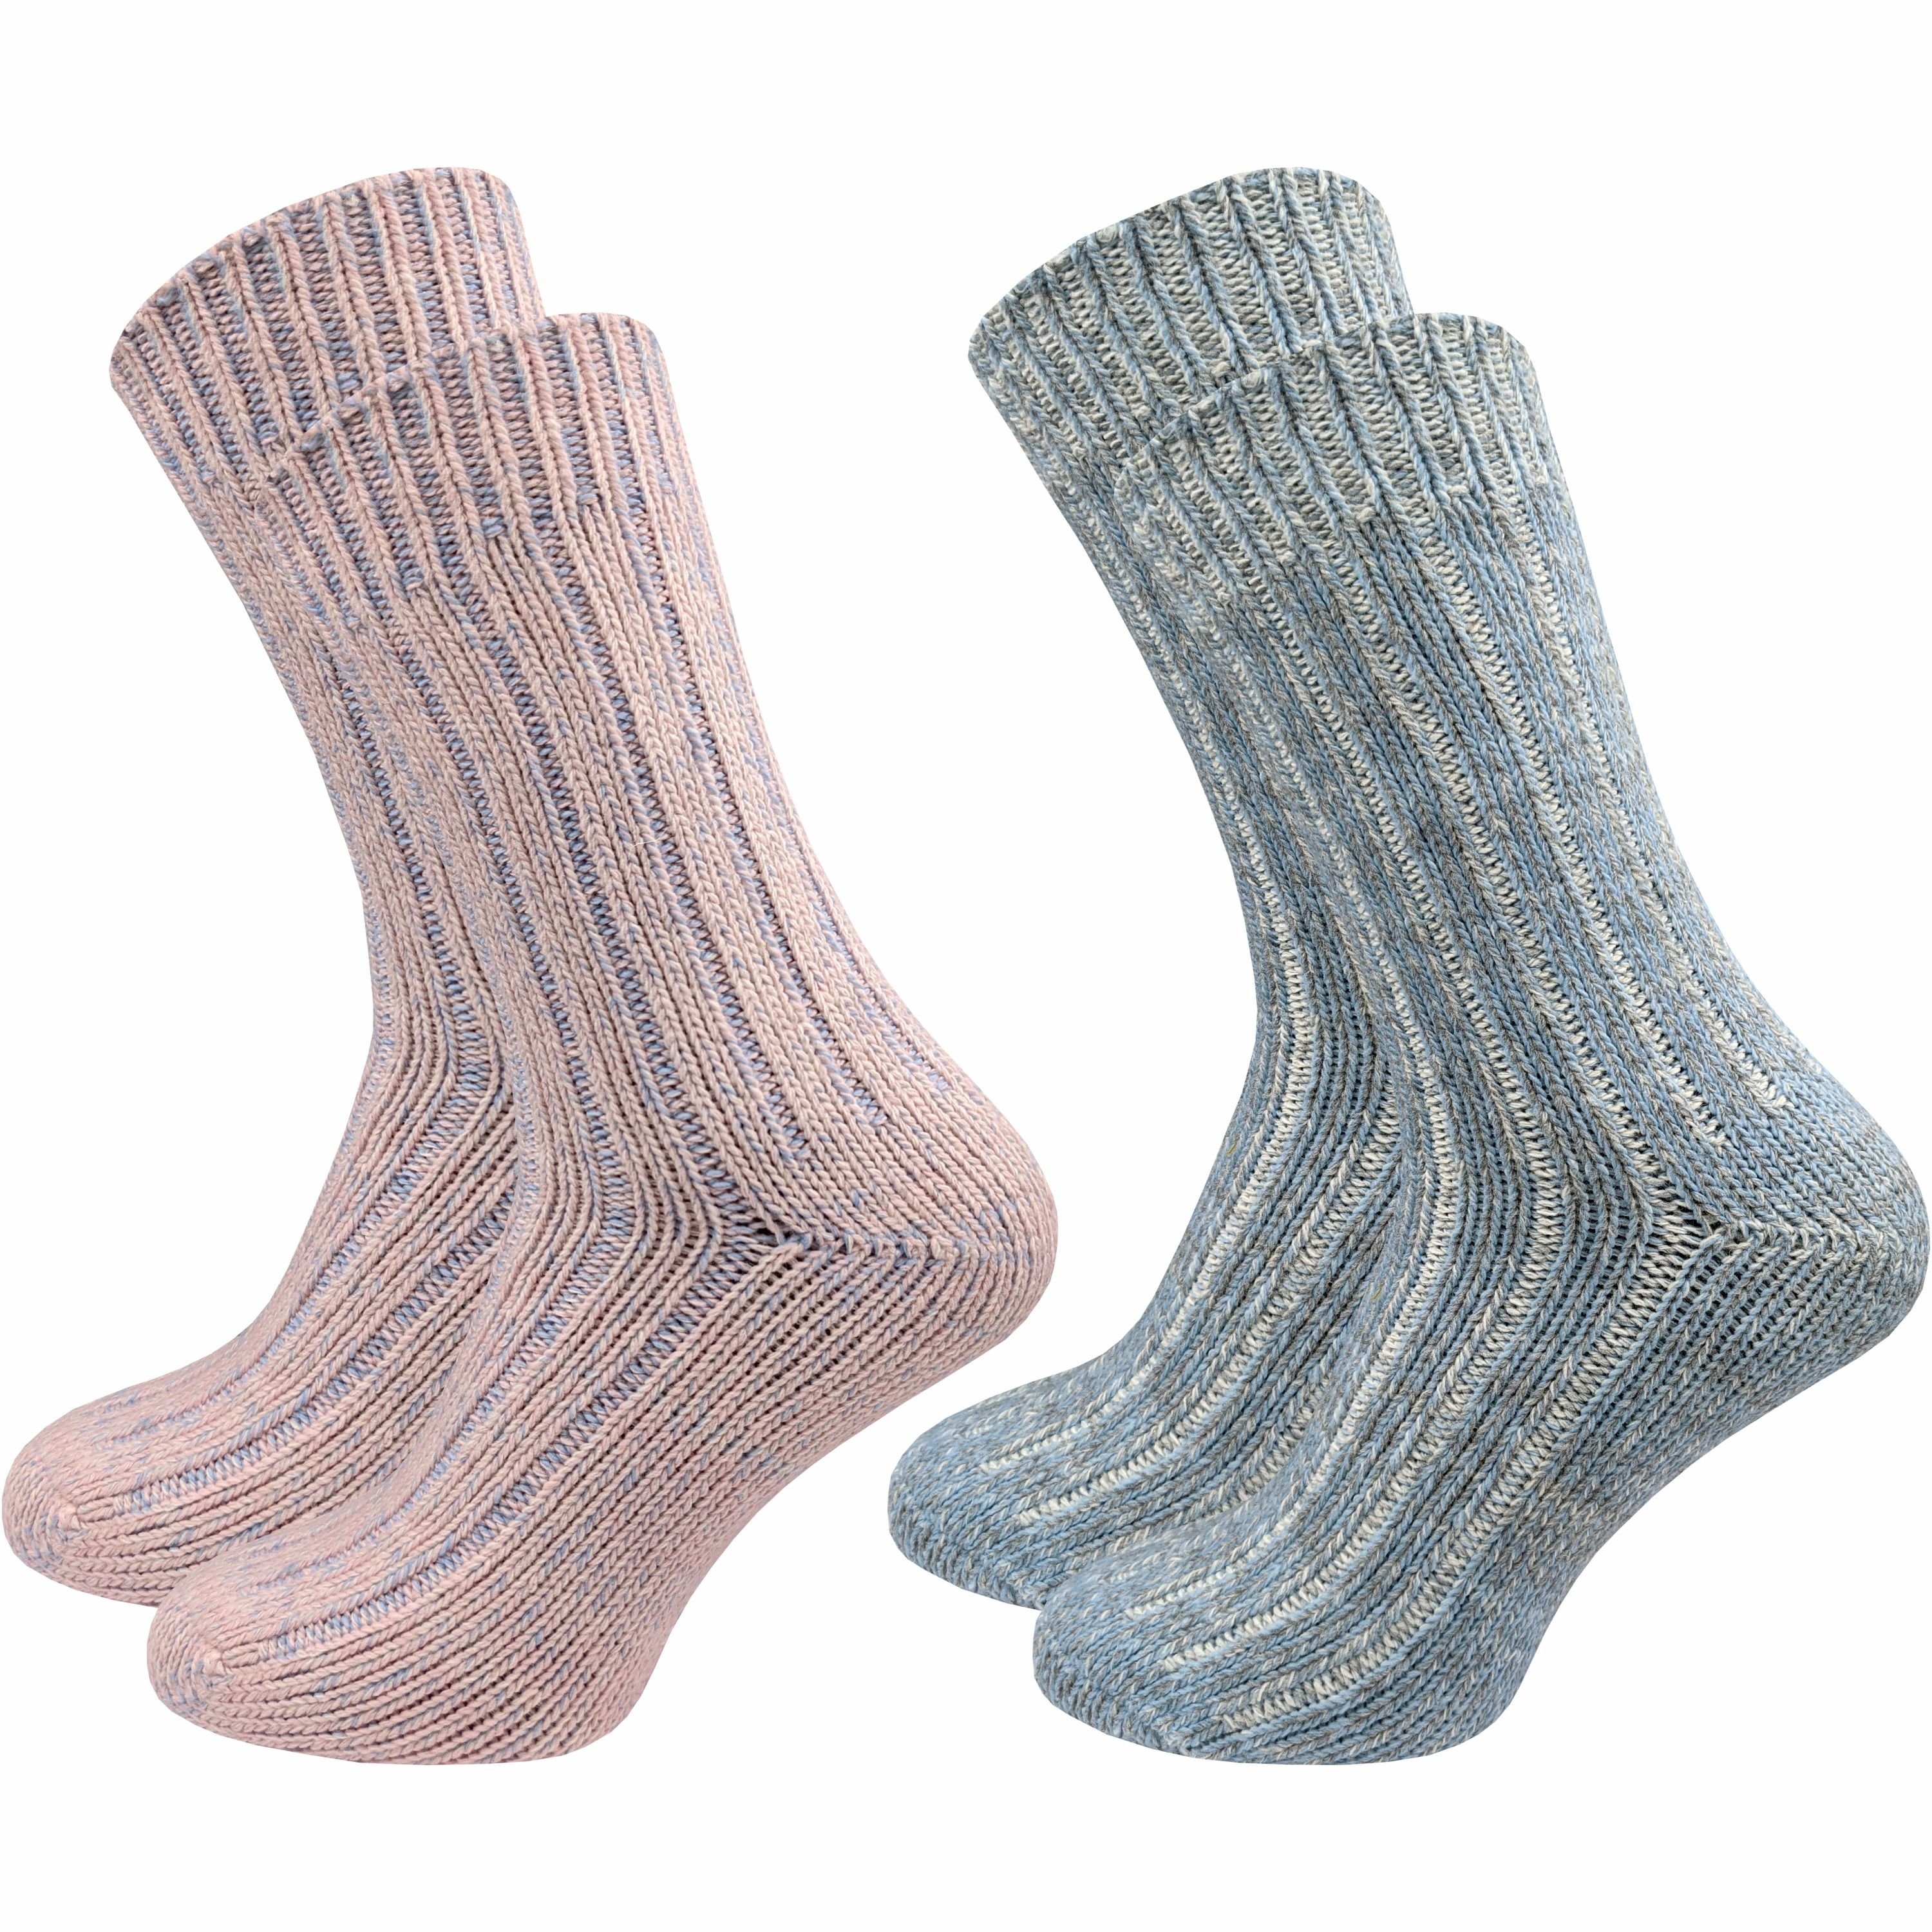 GAWILO Norwegersocken für Wintersocken Dicke Füße Damen - warm & Paar) (2 rosa auch dank warme & Extra für Thermosocke geeignet Wollsocken grau - weich als Wolle 